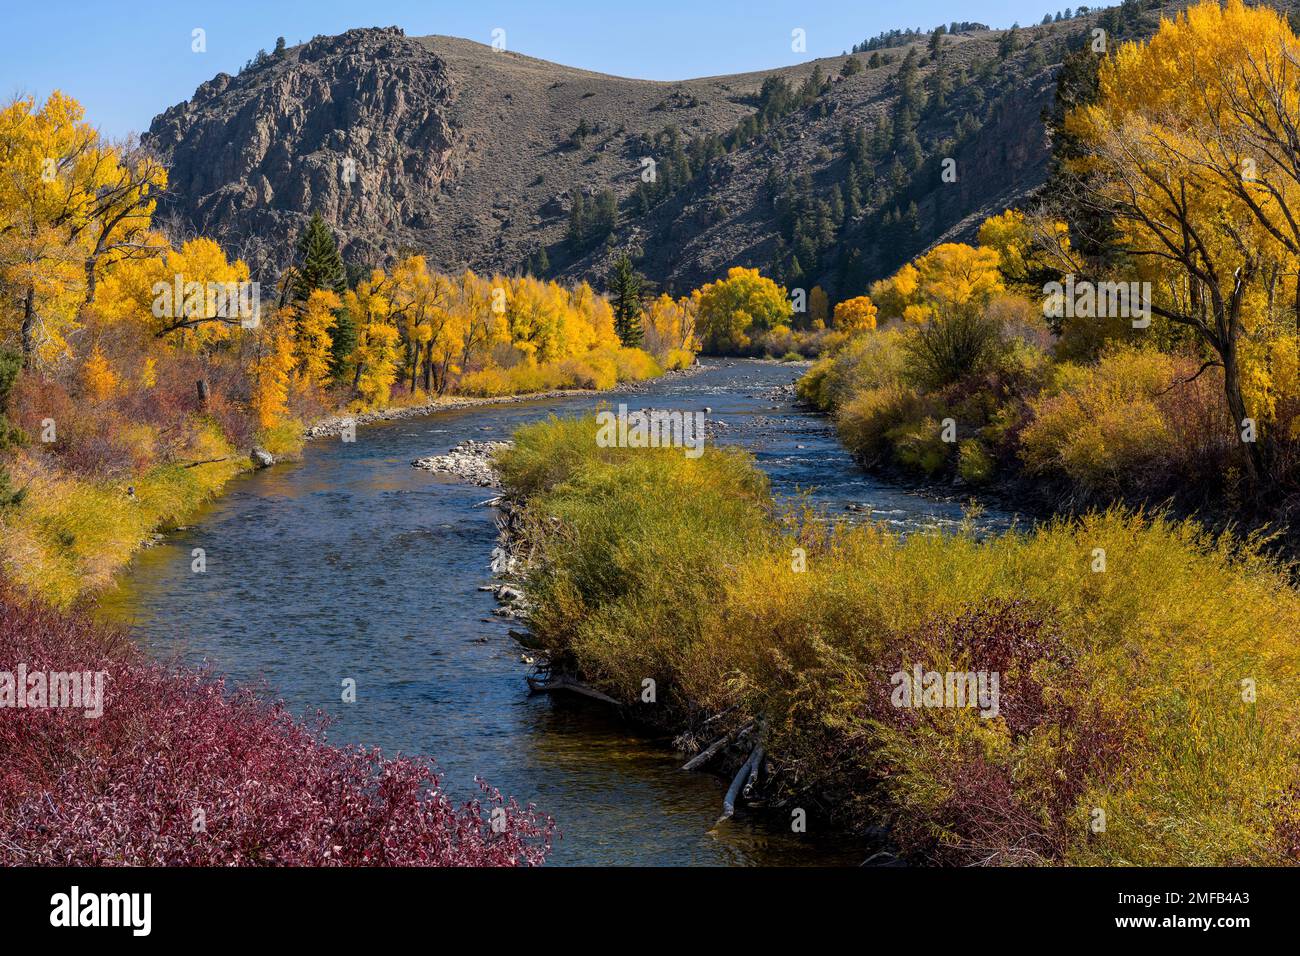 Herbst am Gunnison River - Panoramablick auf den gewundenen Gunnison River im Süden von Almont an einem sonnigen Herbstmorgen. Gunnison, Colorado, USA. Stockfoto